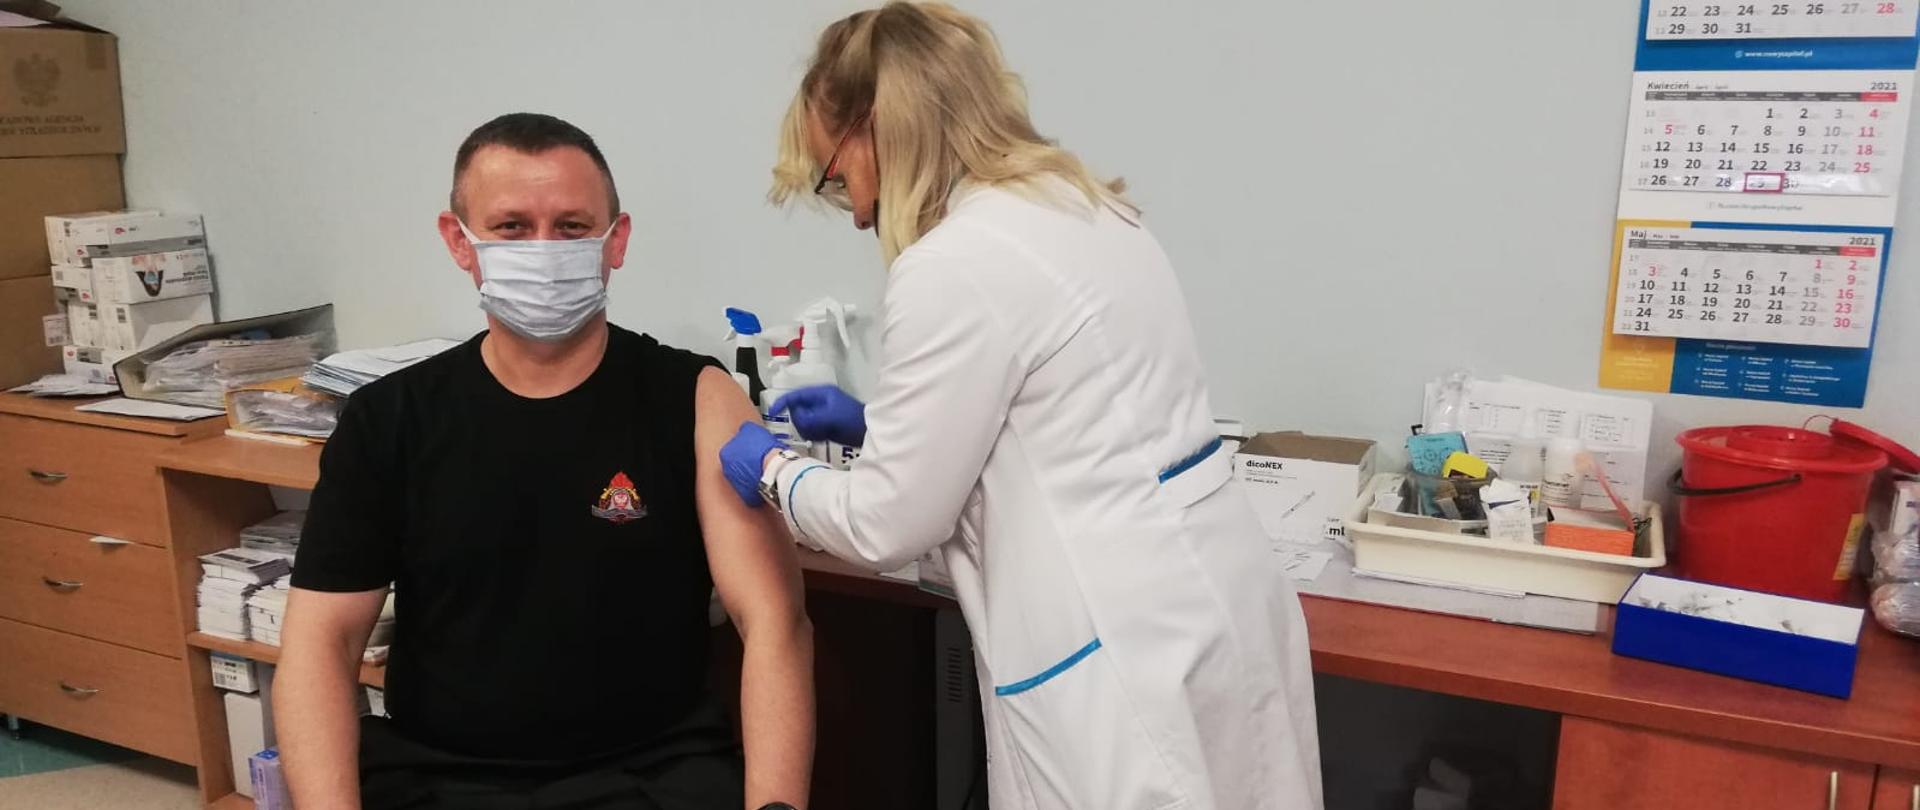 Na zdjęciu po lewej stronie młodszy brygadier Paweł Puchowski podczas szczepienia przeciw Covid-19. Po prawej pani pielęgniarka wykonująca szczepienie.